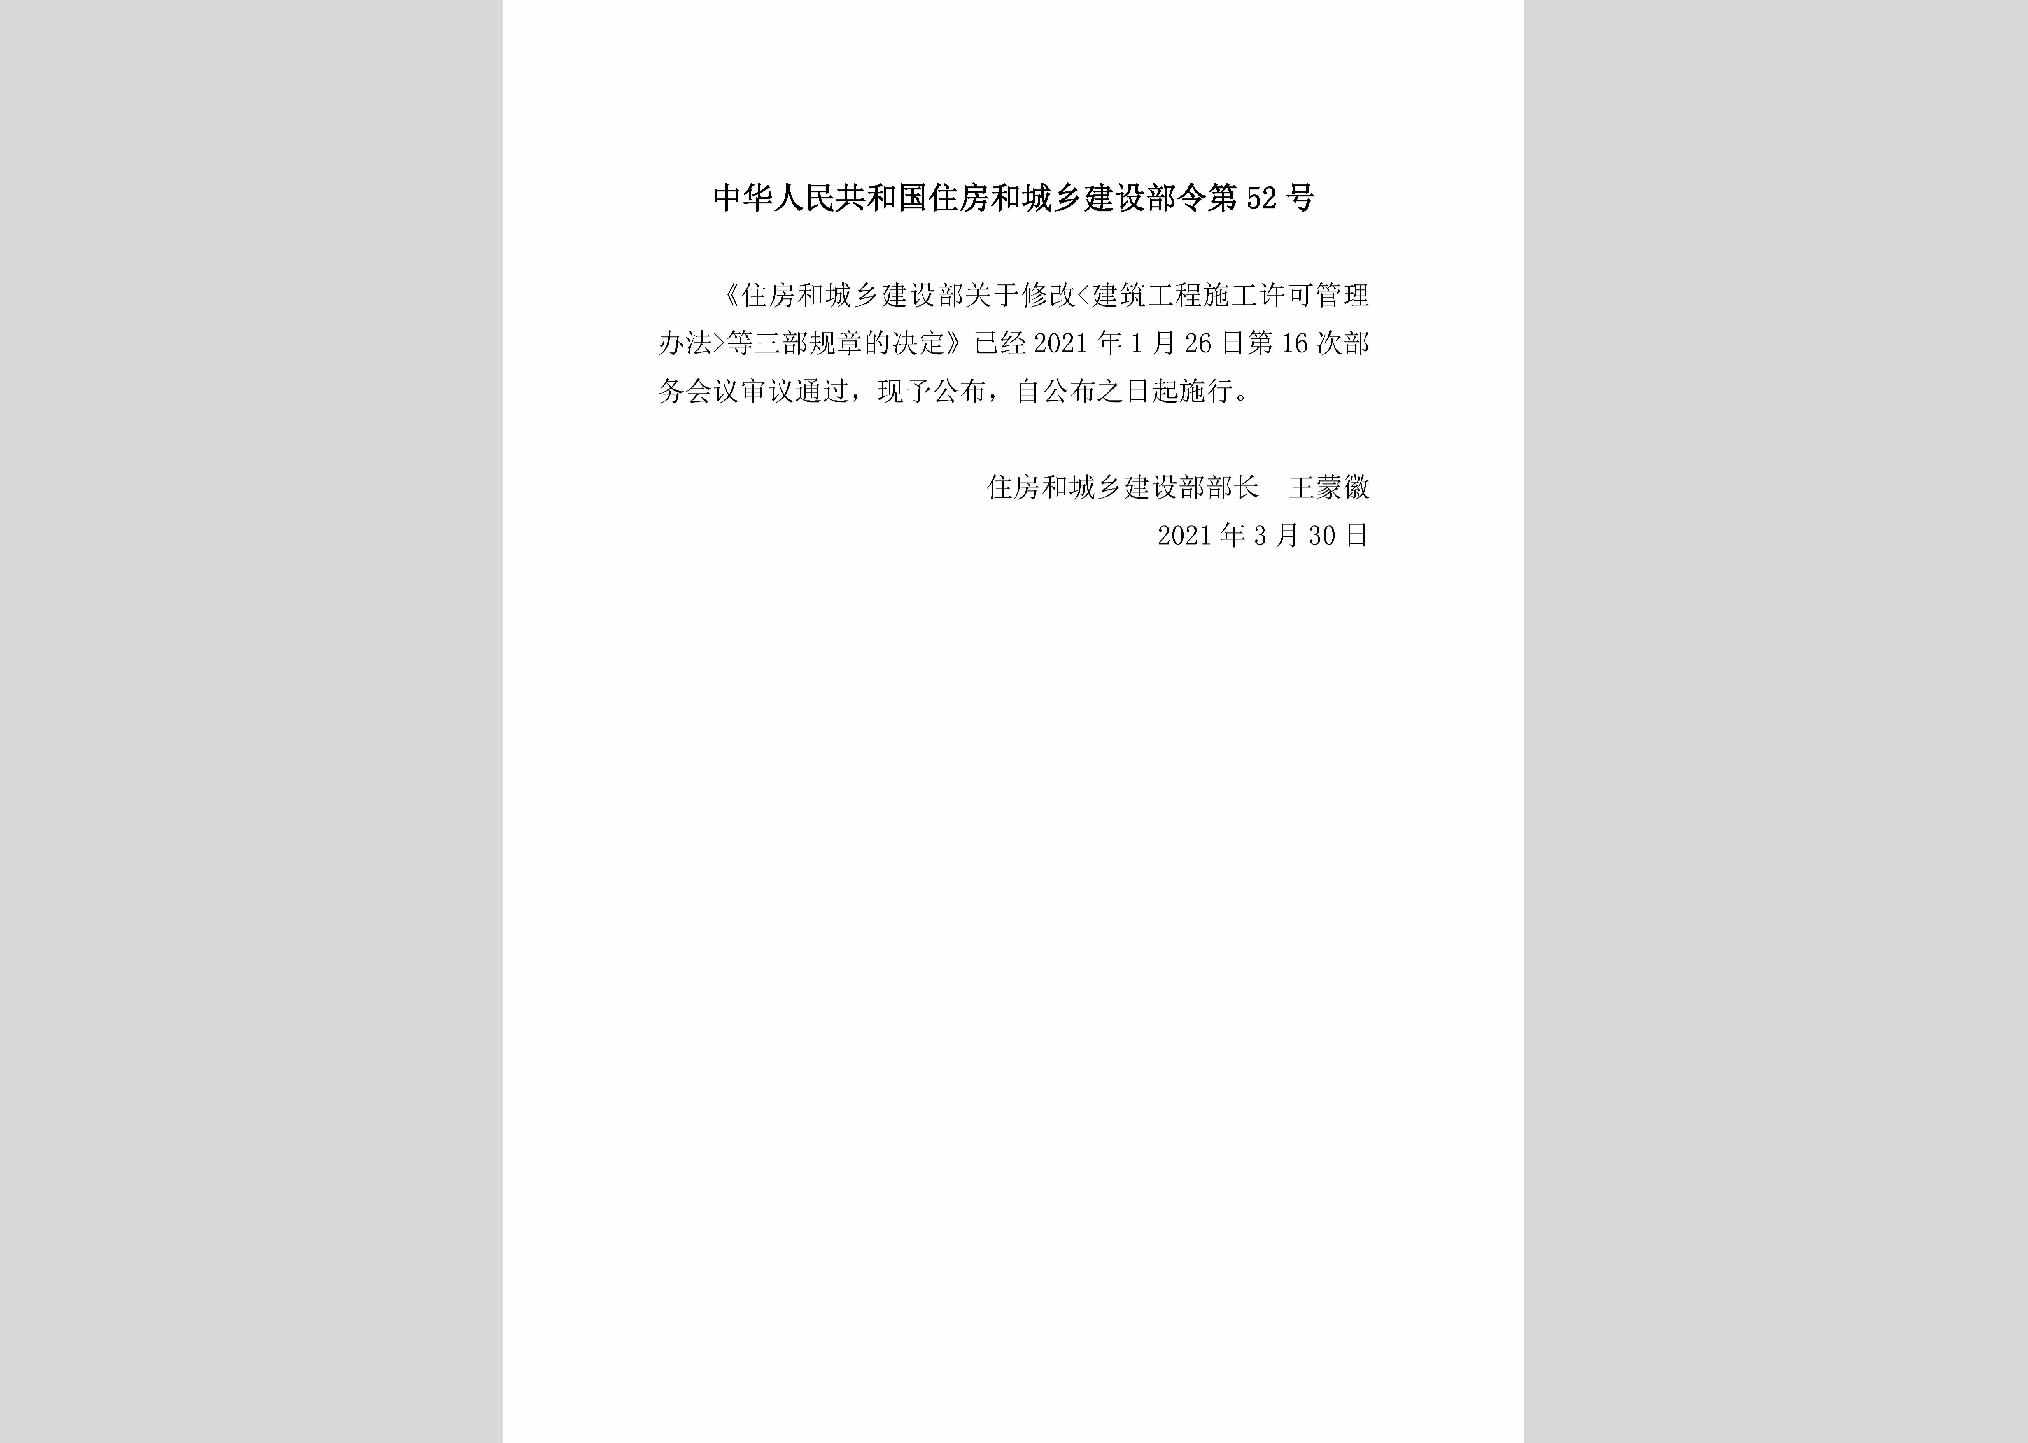 中华人民共和国住房和城乡建设部令第52号：住房和城乡建设部关于修改《建筑工程施工许可管理办法》等三部规章的决定